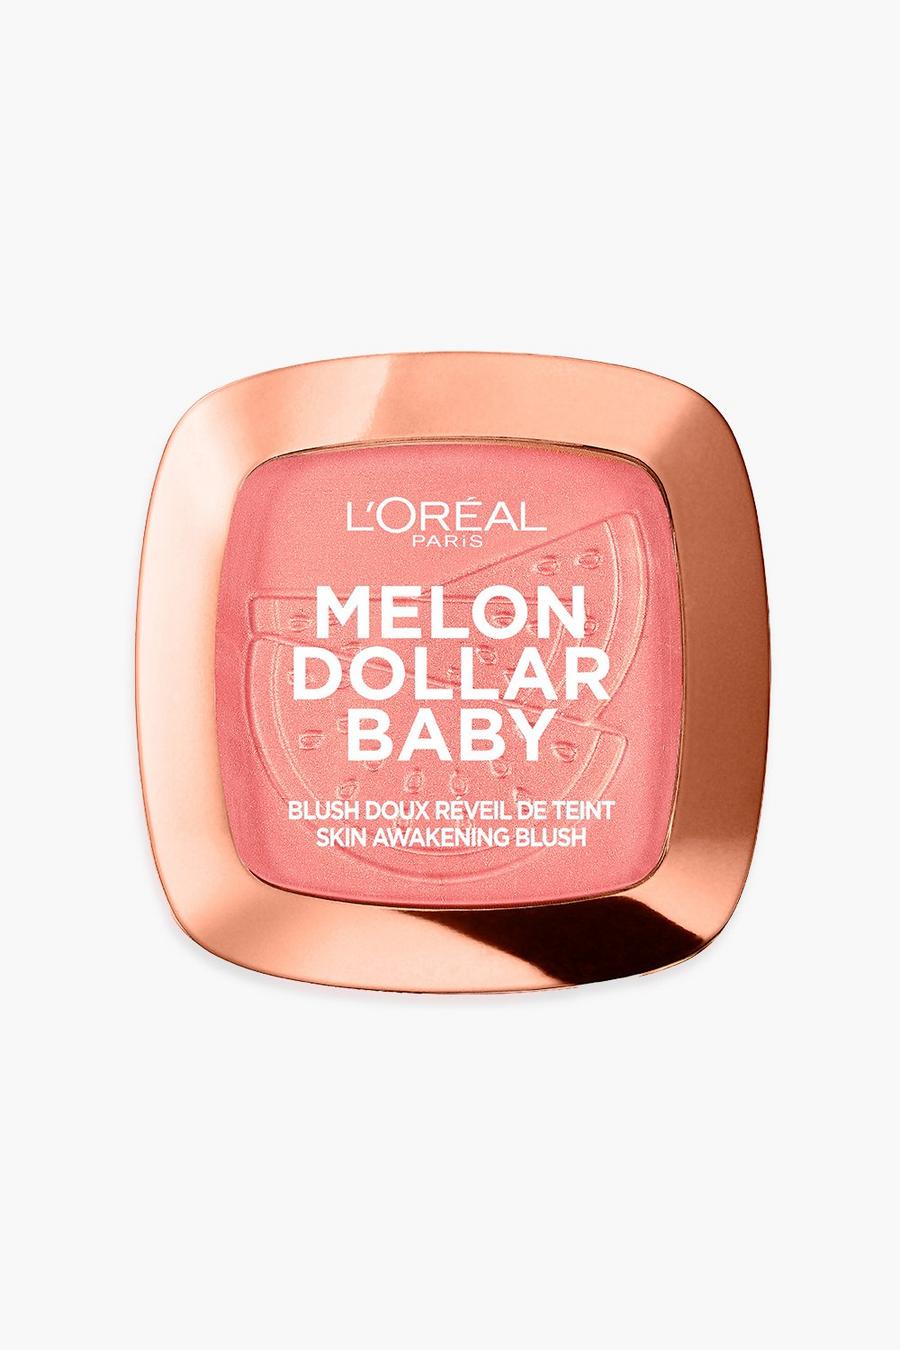 L'Oréal Paris - Blush doux réveil de teint Melon Dollar Baby image number 1